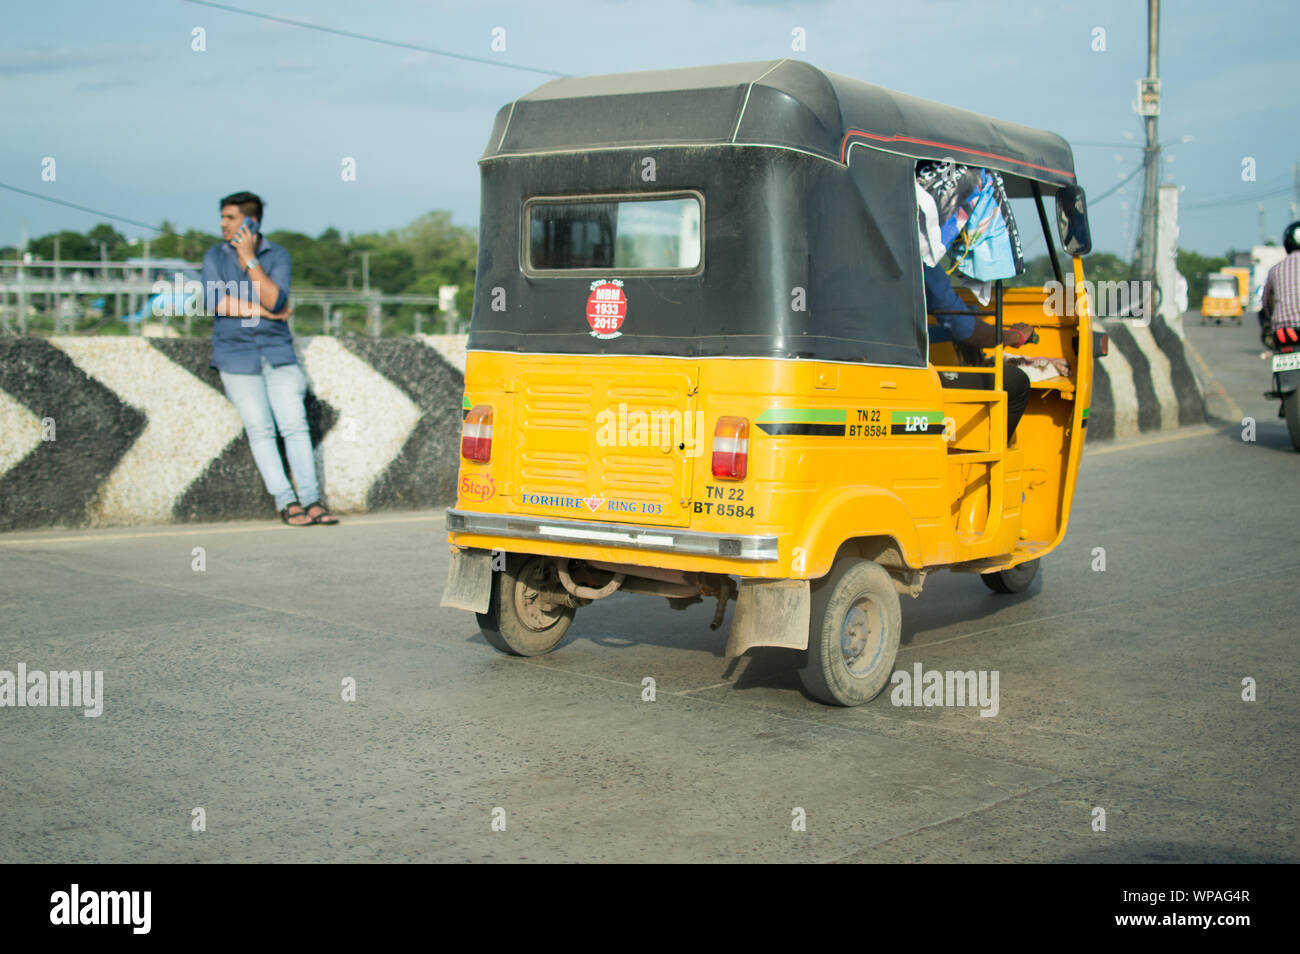 A tuk-tuk / autorickshaw in the streets of Chennai, India Stock Photo